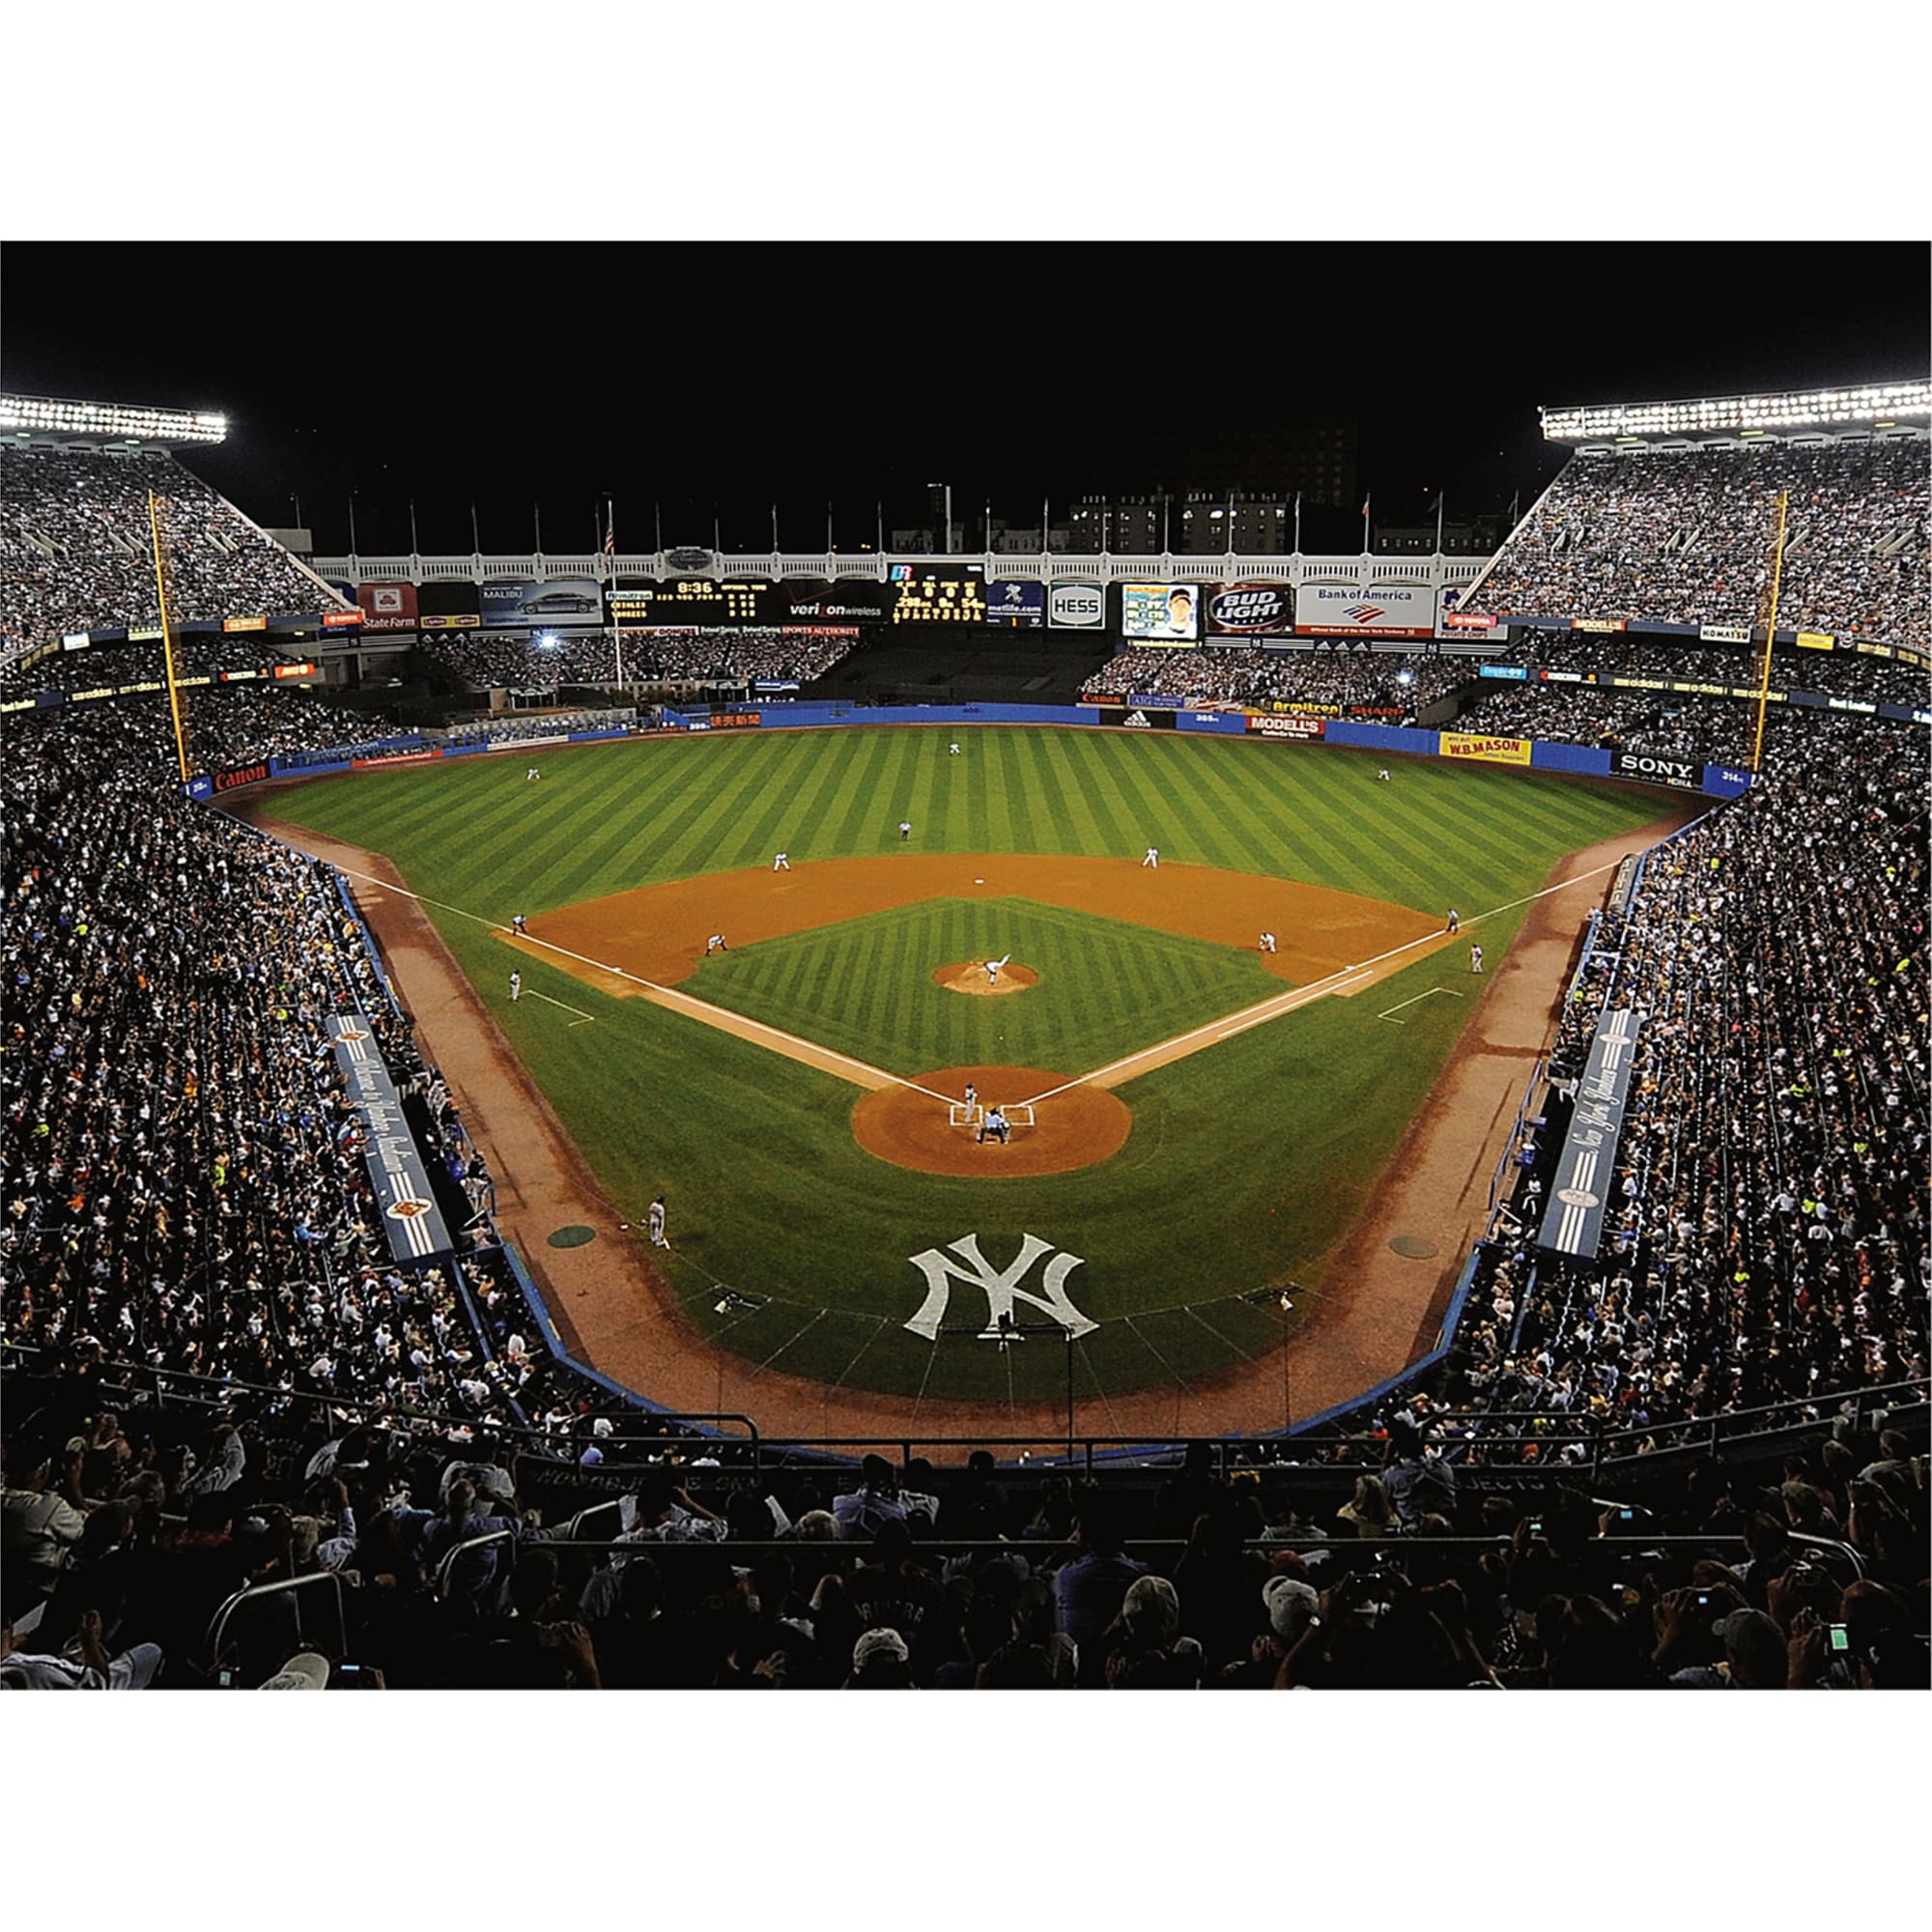 Yankee Stadium  Yankee stadium, New york yankees, New york yankees baseball